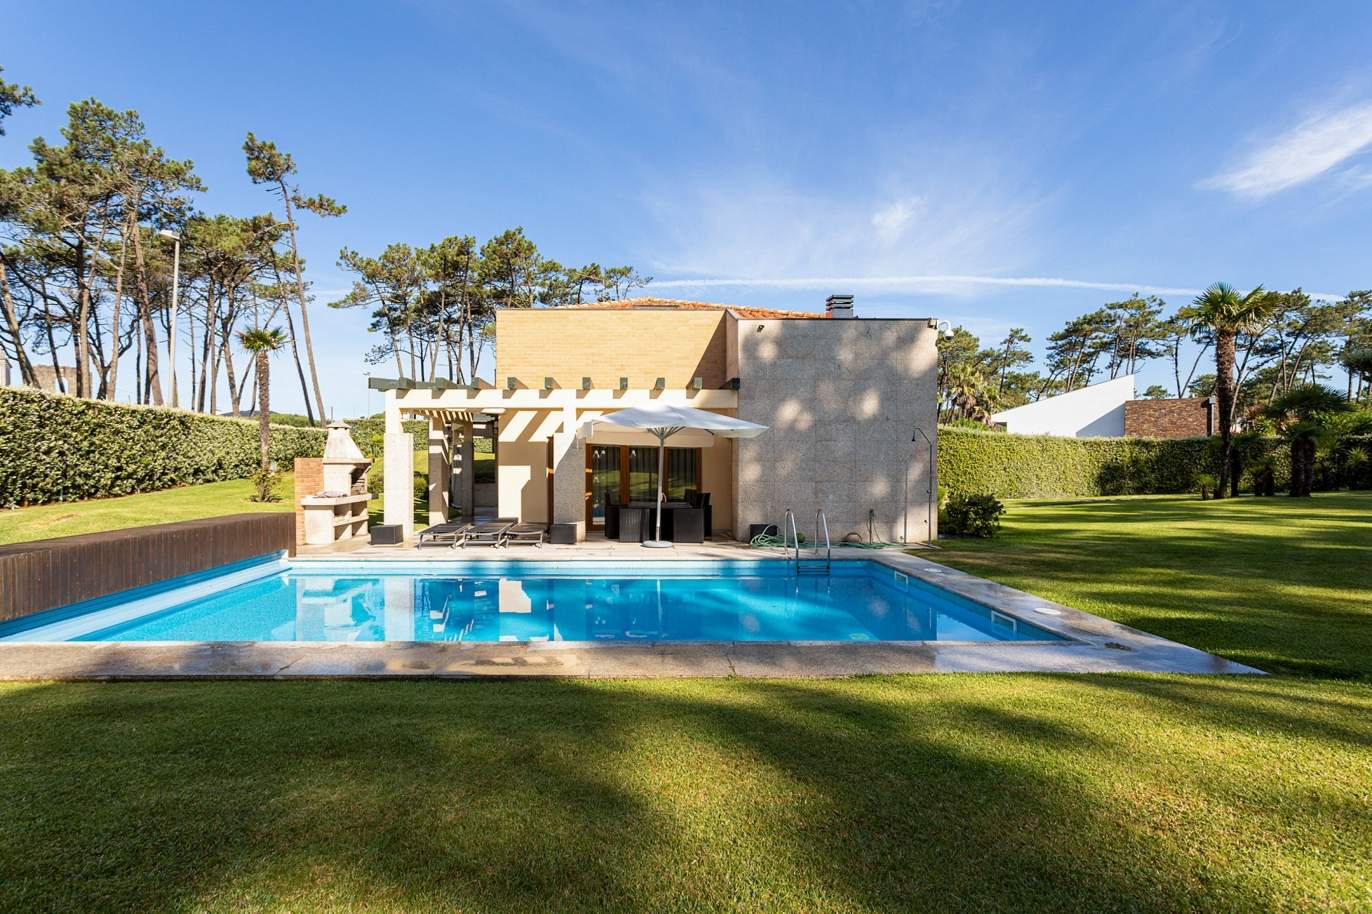 Vente: villa de luxe avec piscine et jardin, près de la plage d